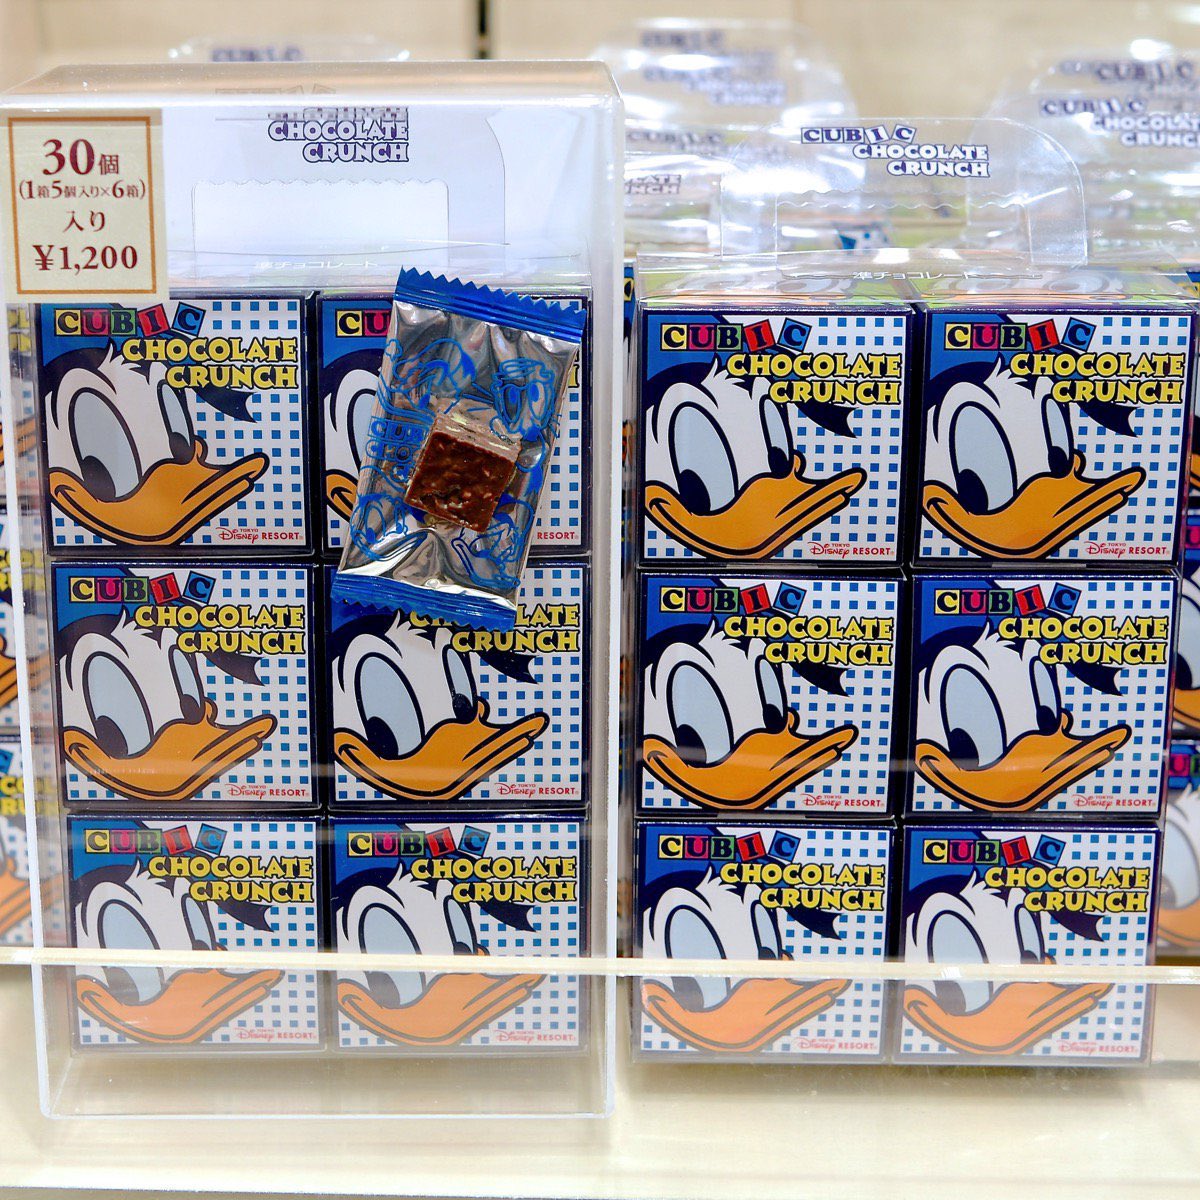 Mezzomikiのディズニーブログ 東京ディズニーリゾート レギュラーお菓子のお土産 ドナルド のキュービックチョコレートクランチ くまのプーさんのキャンディー ミッキー ミニーのおせんべい 本日新発売 詳しくは T Co H3h6neeo64 T